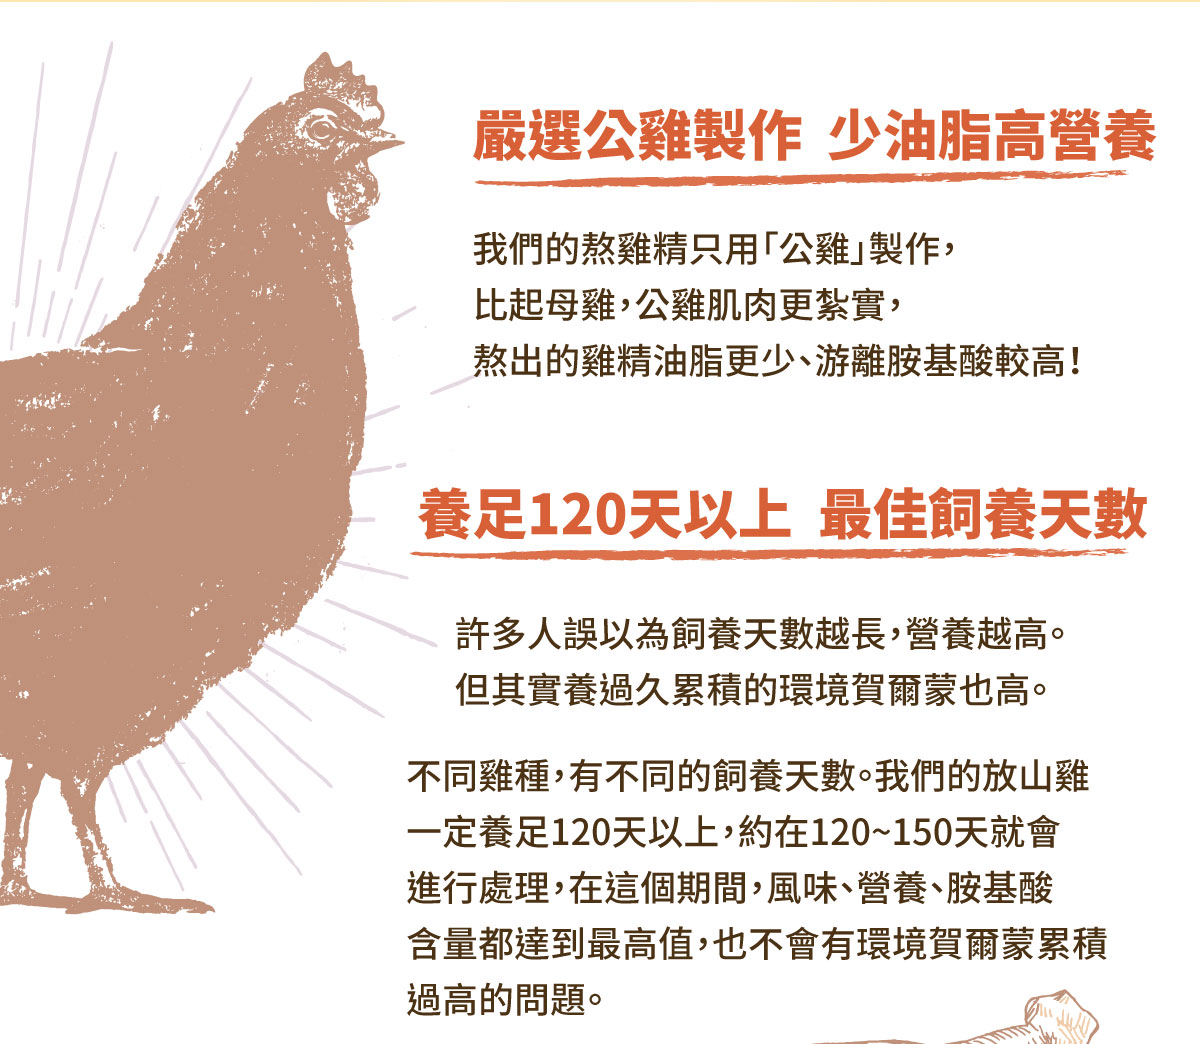 嚴選公雞製作 少油脂高營養 養足120天以上 最佳飼養天數